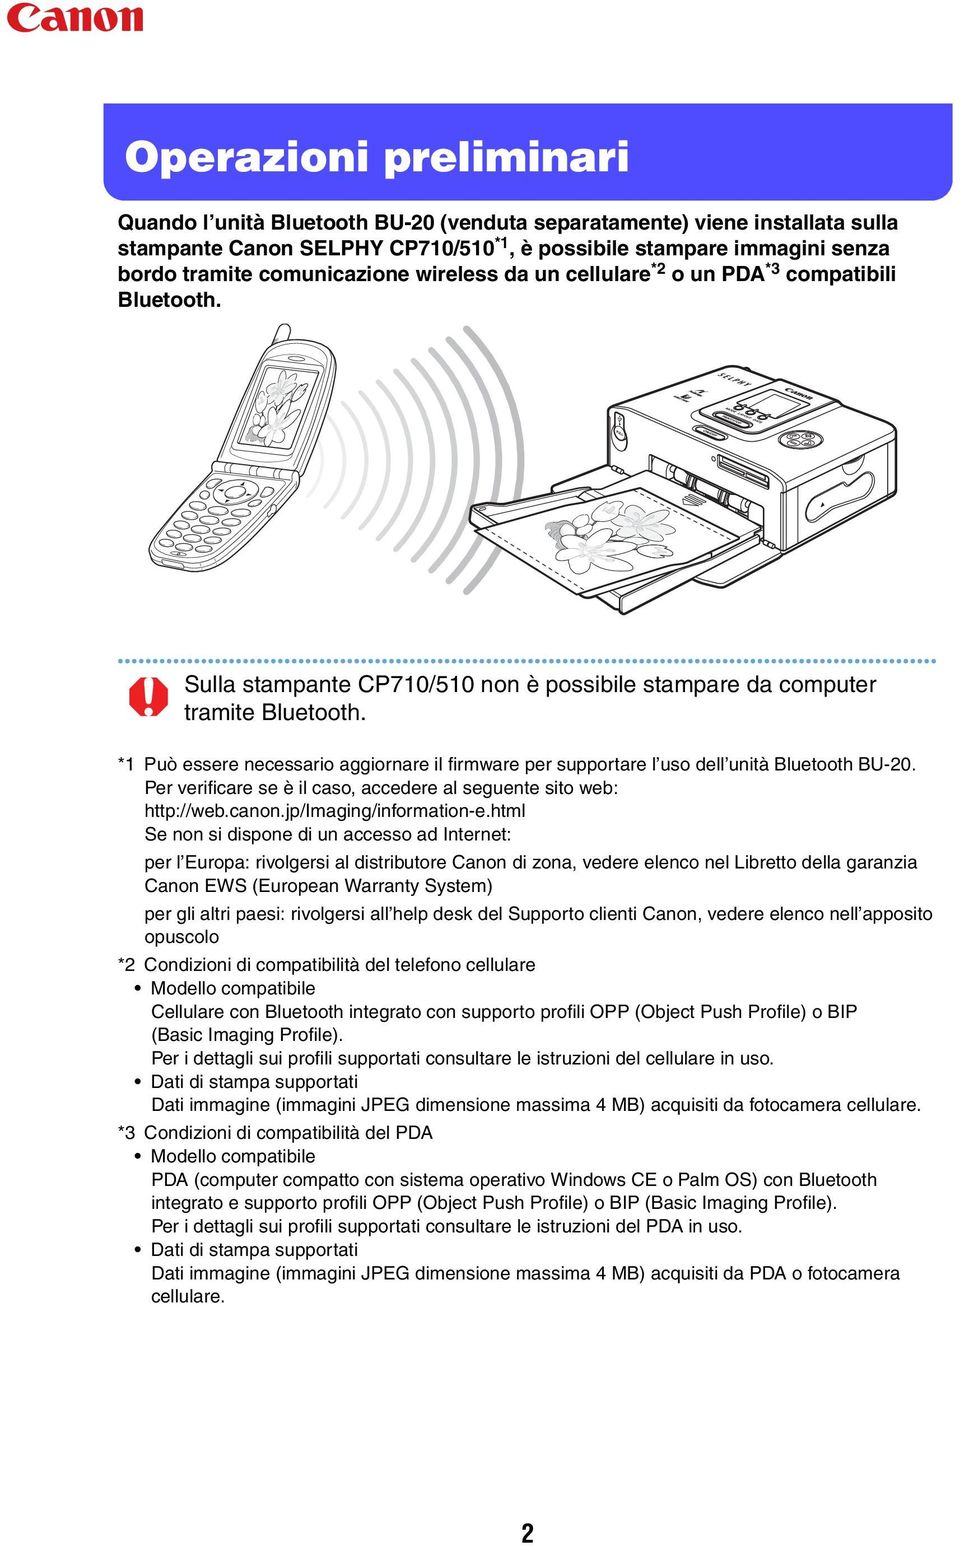 *1 Può essere necessario aggiornare il firmware per supportare l uso dell unità Bluetooth BU-20. Per verificare se è il caso, accedere al seguente sito web: http://web.canon.jp/imaging/information-e.